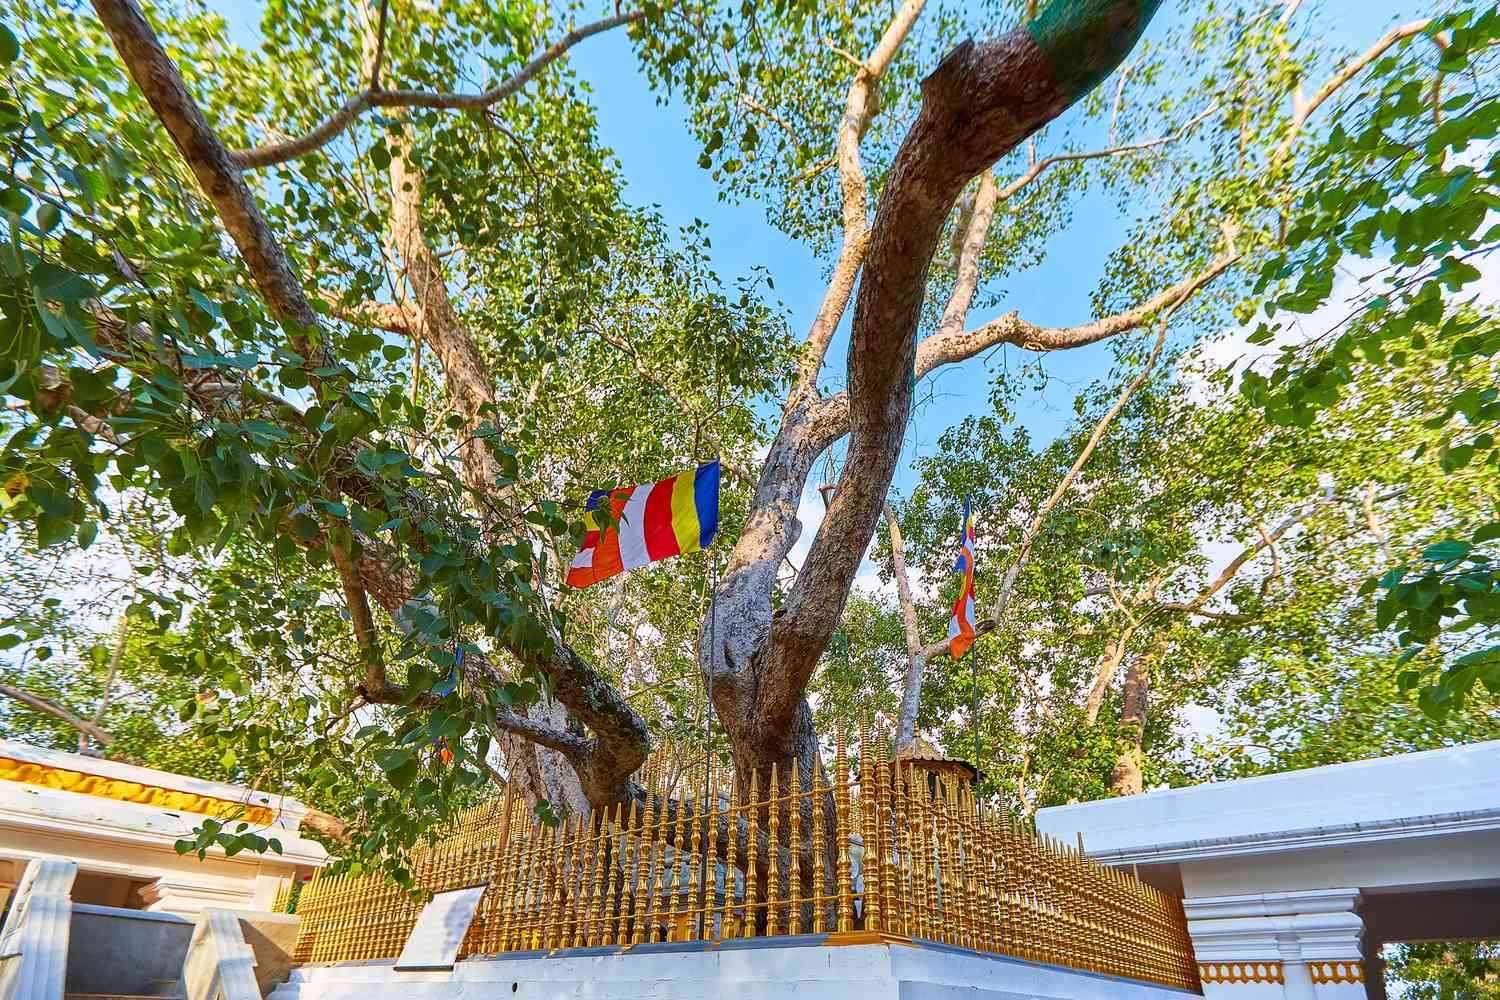 Jaya Sri Maha Bodhi est un figuier sacré dans les jardins de Mahamewna, Anuradhapura. Un lieu sacré pour les bouddhistes du Sri Lanka